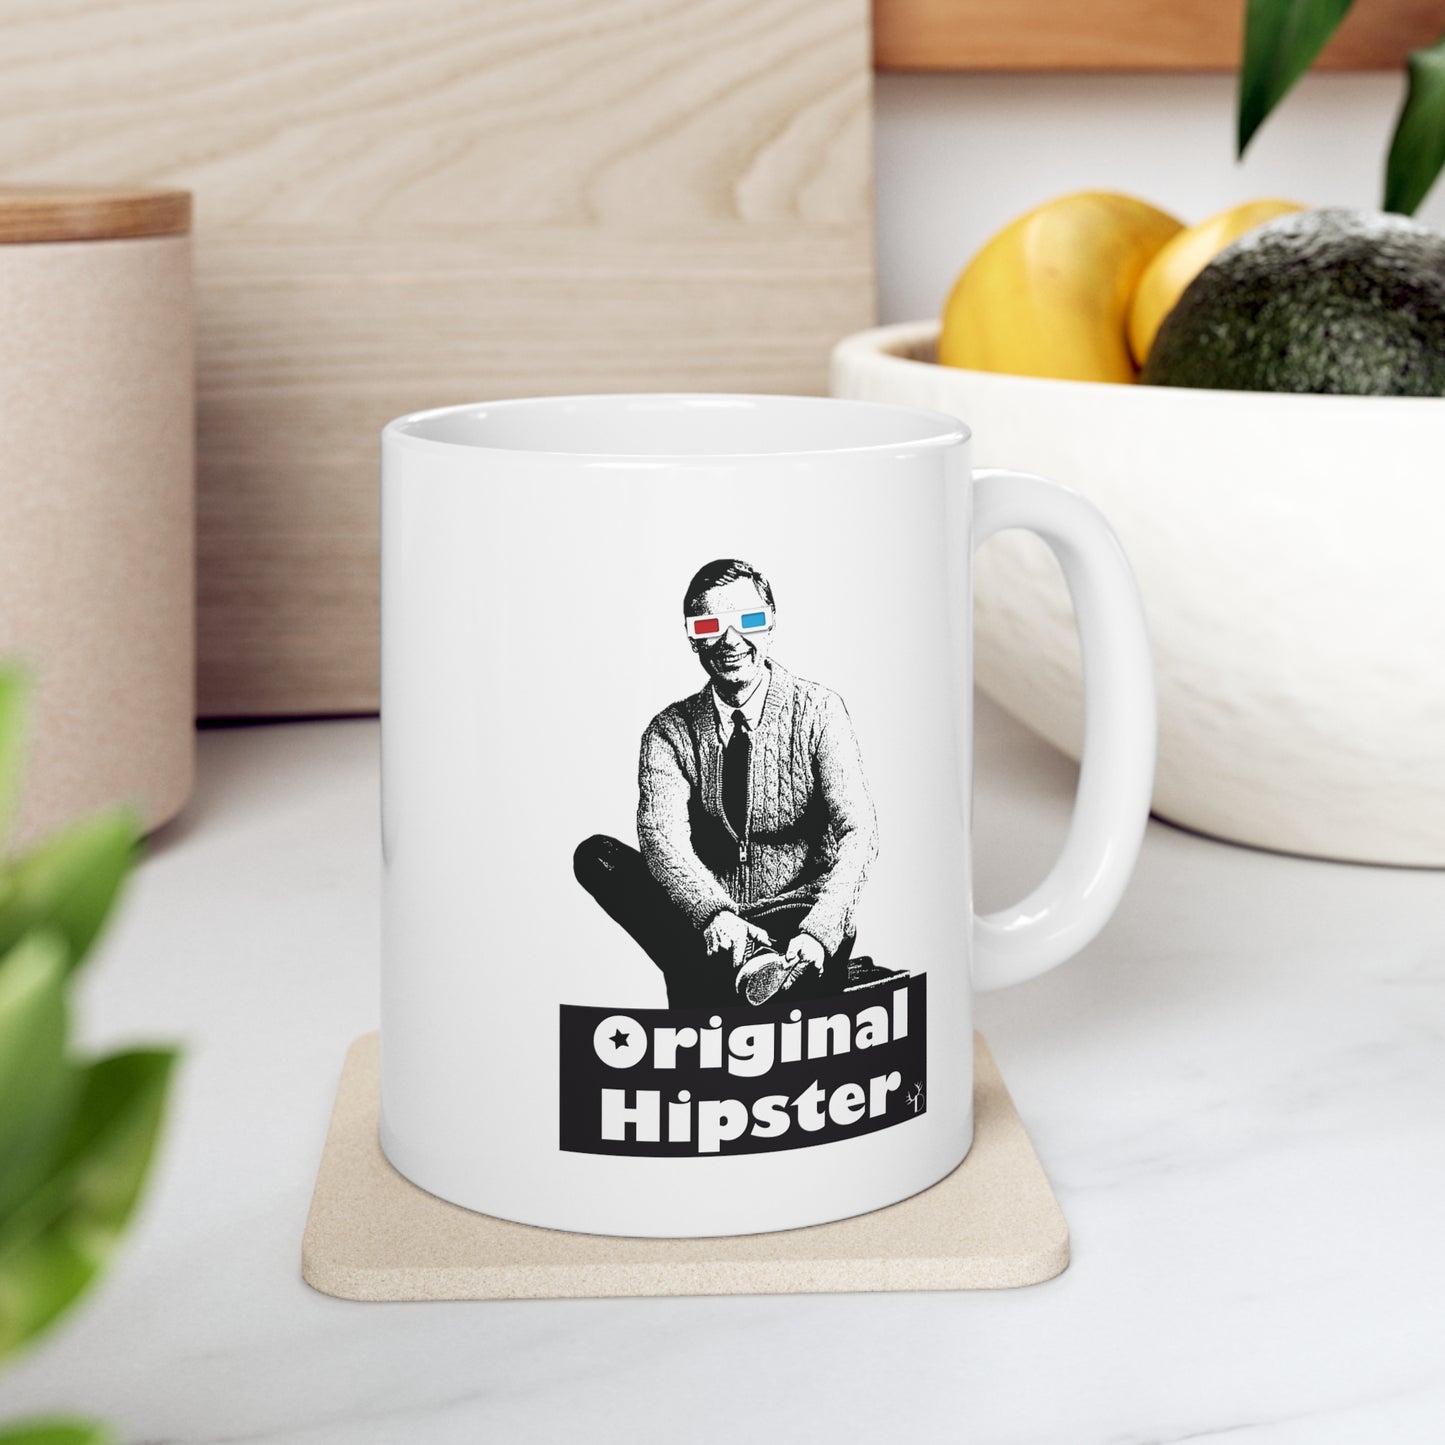 Original Hipster Ceramic Mug 11oz